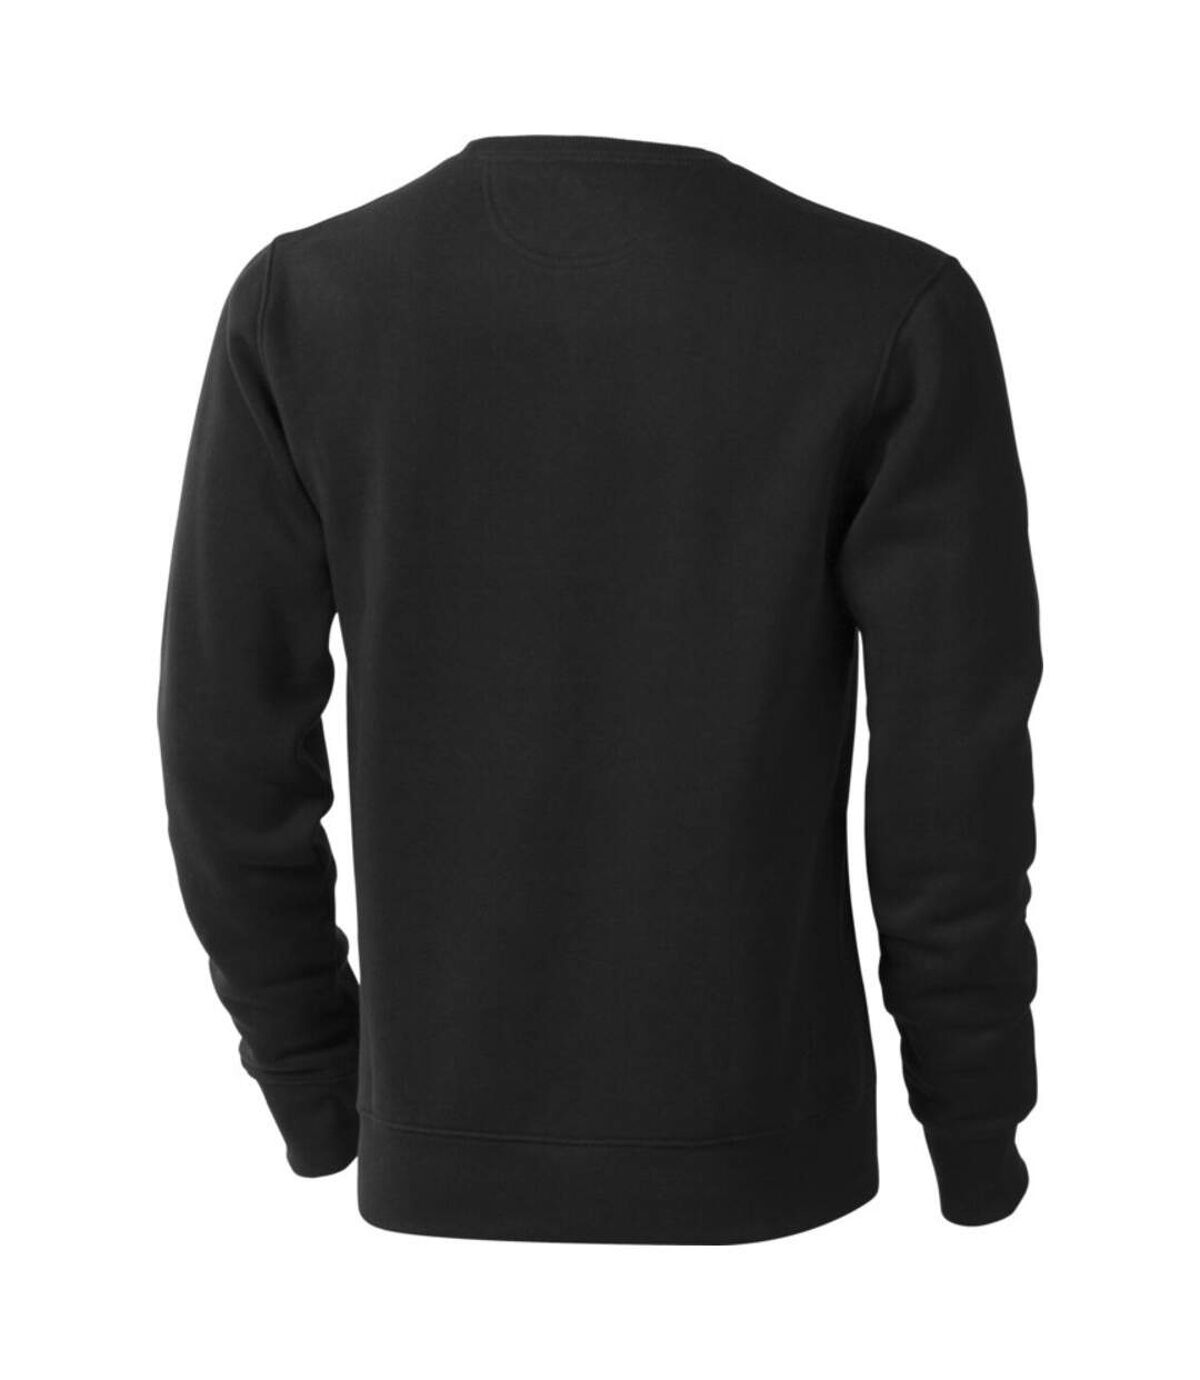 Elevate Mens Surrey Crew Neck Sweater (Anthracite) - UTPF1849